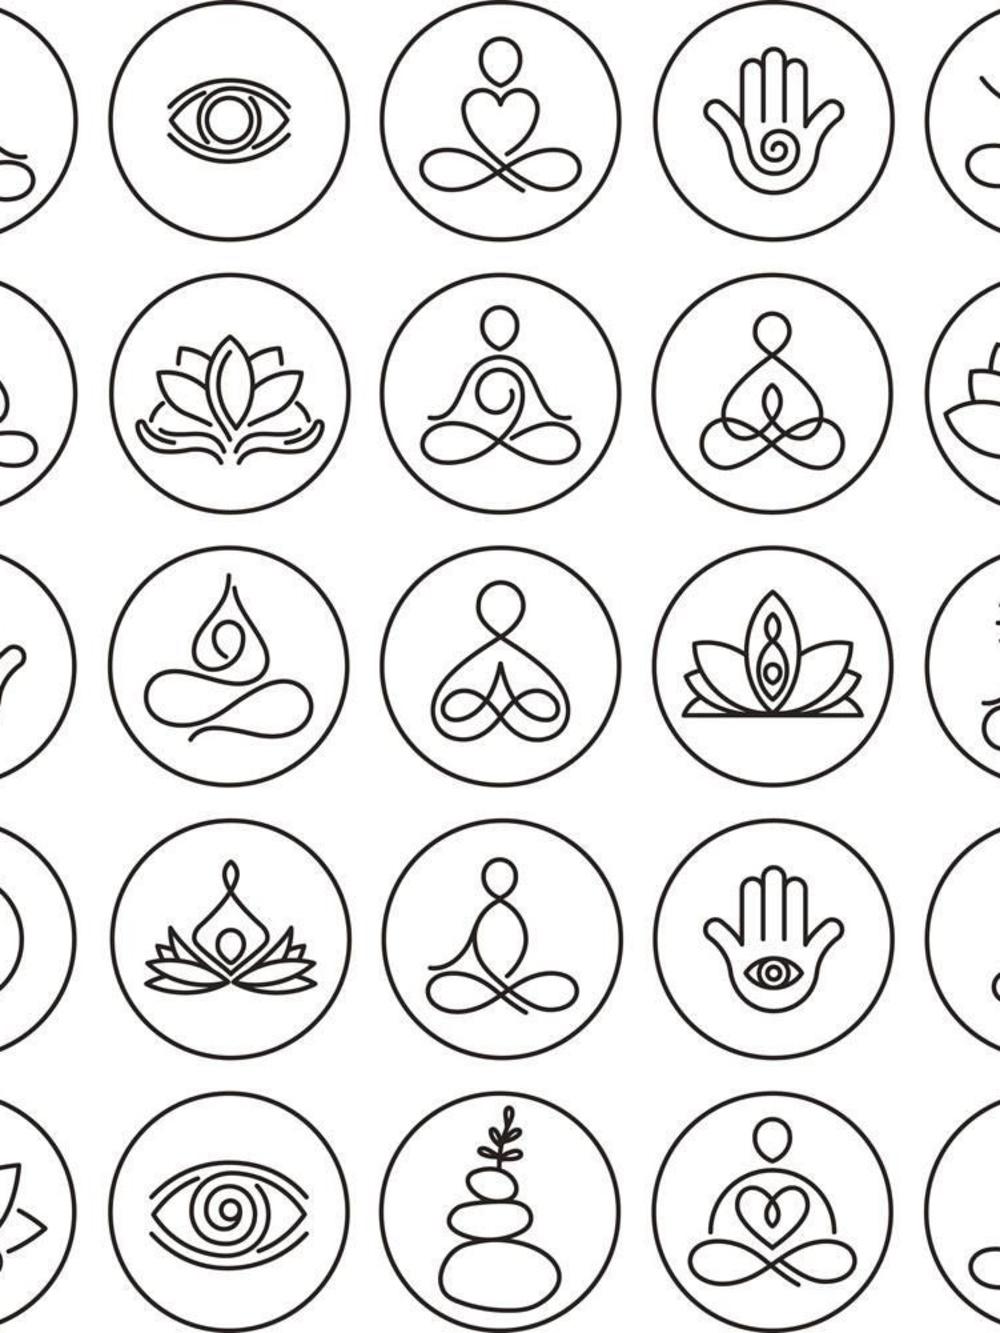 La vie en mode zen : quel type de méditation fonctionne ?